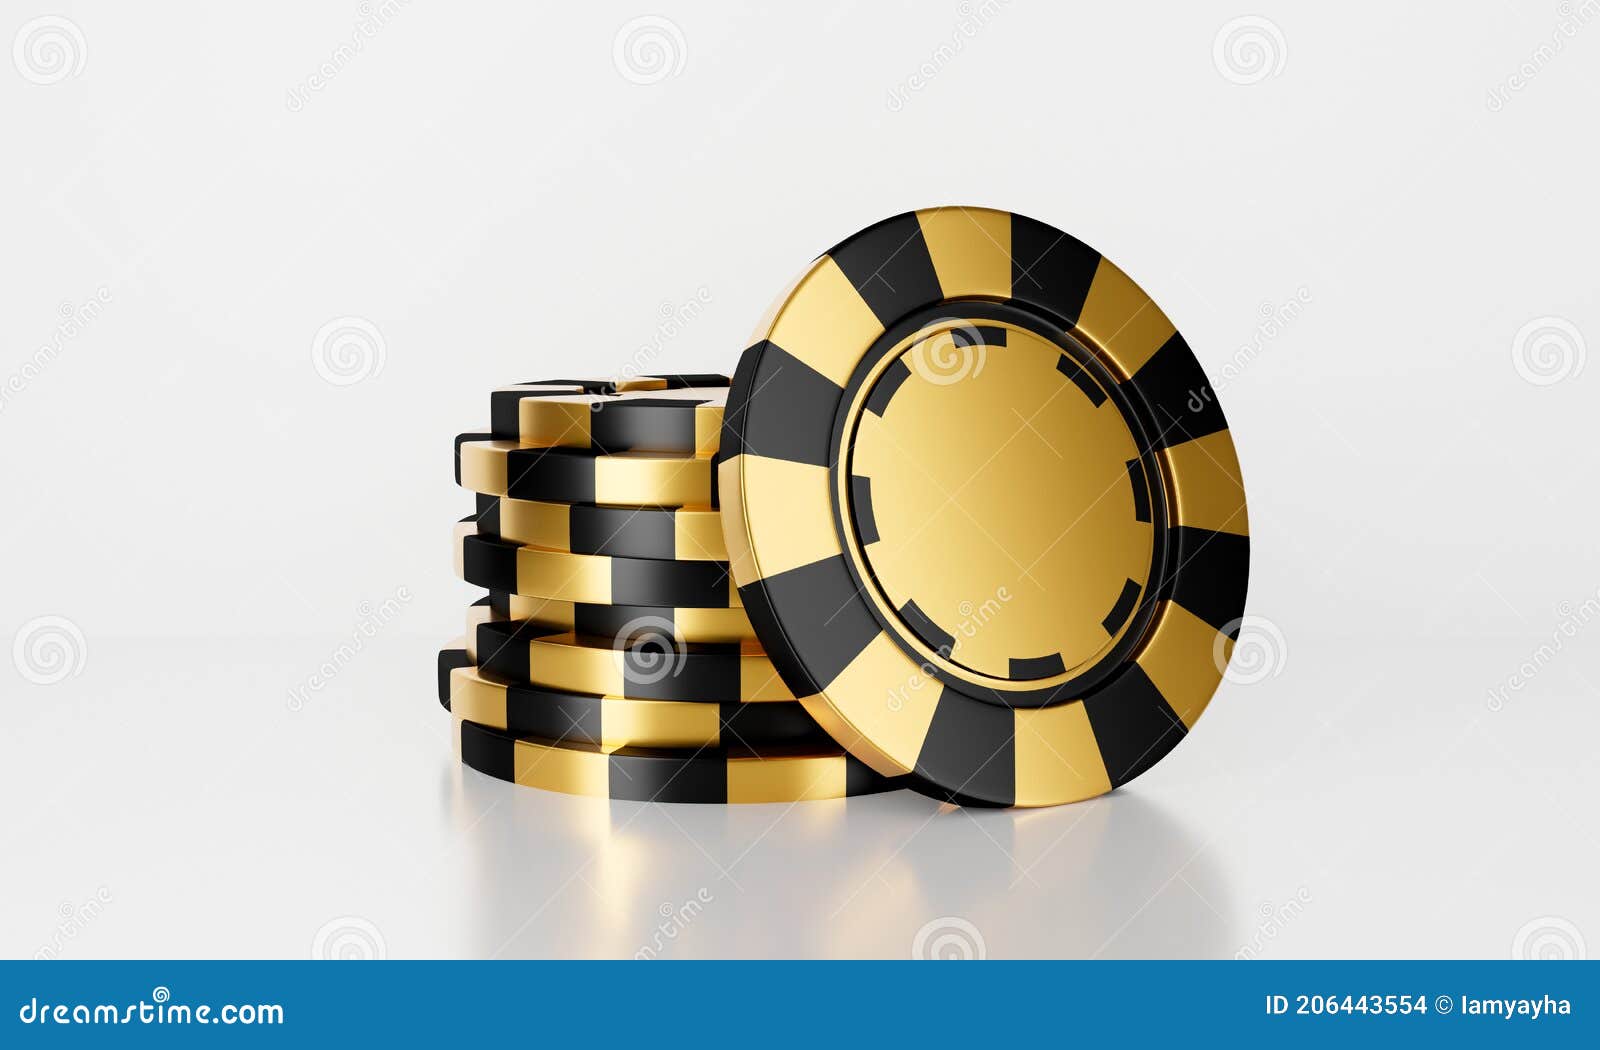 Казино онлайн золотая фишка играть в карточную игру покер онлайн бесплатно